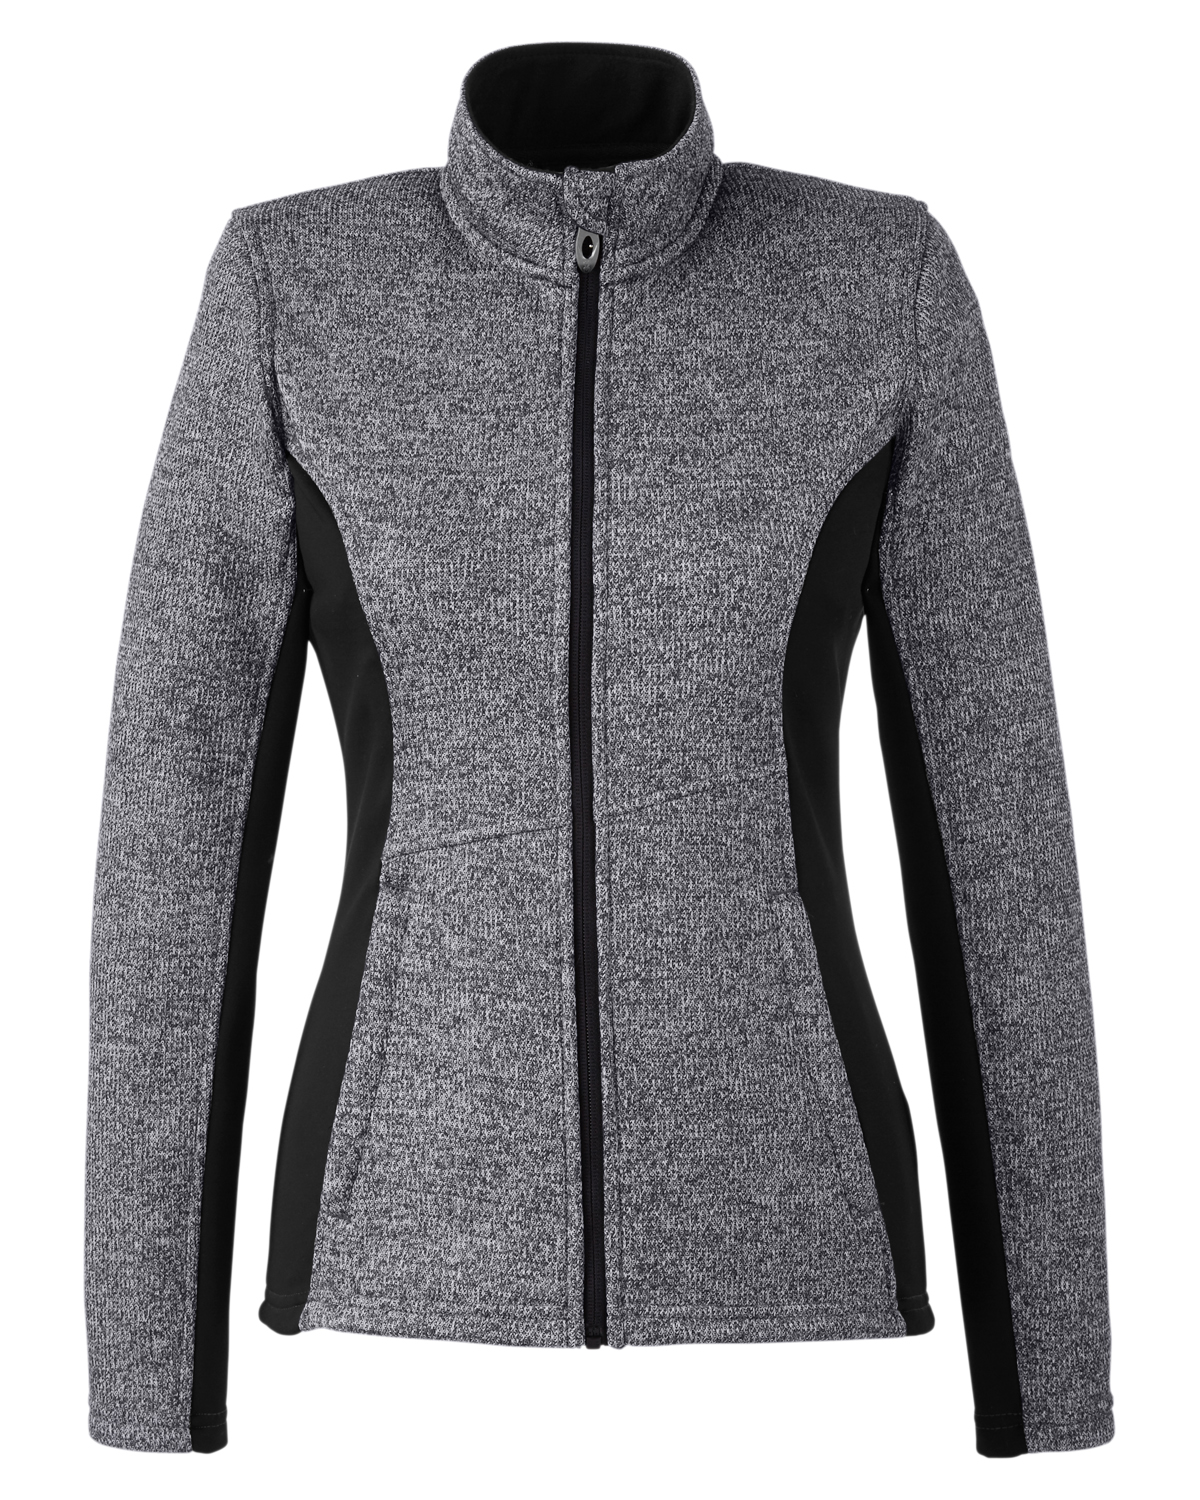 Spyder Women's Constant Full Zip Sweater Gameday Jacket 